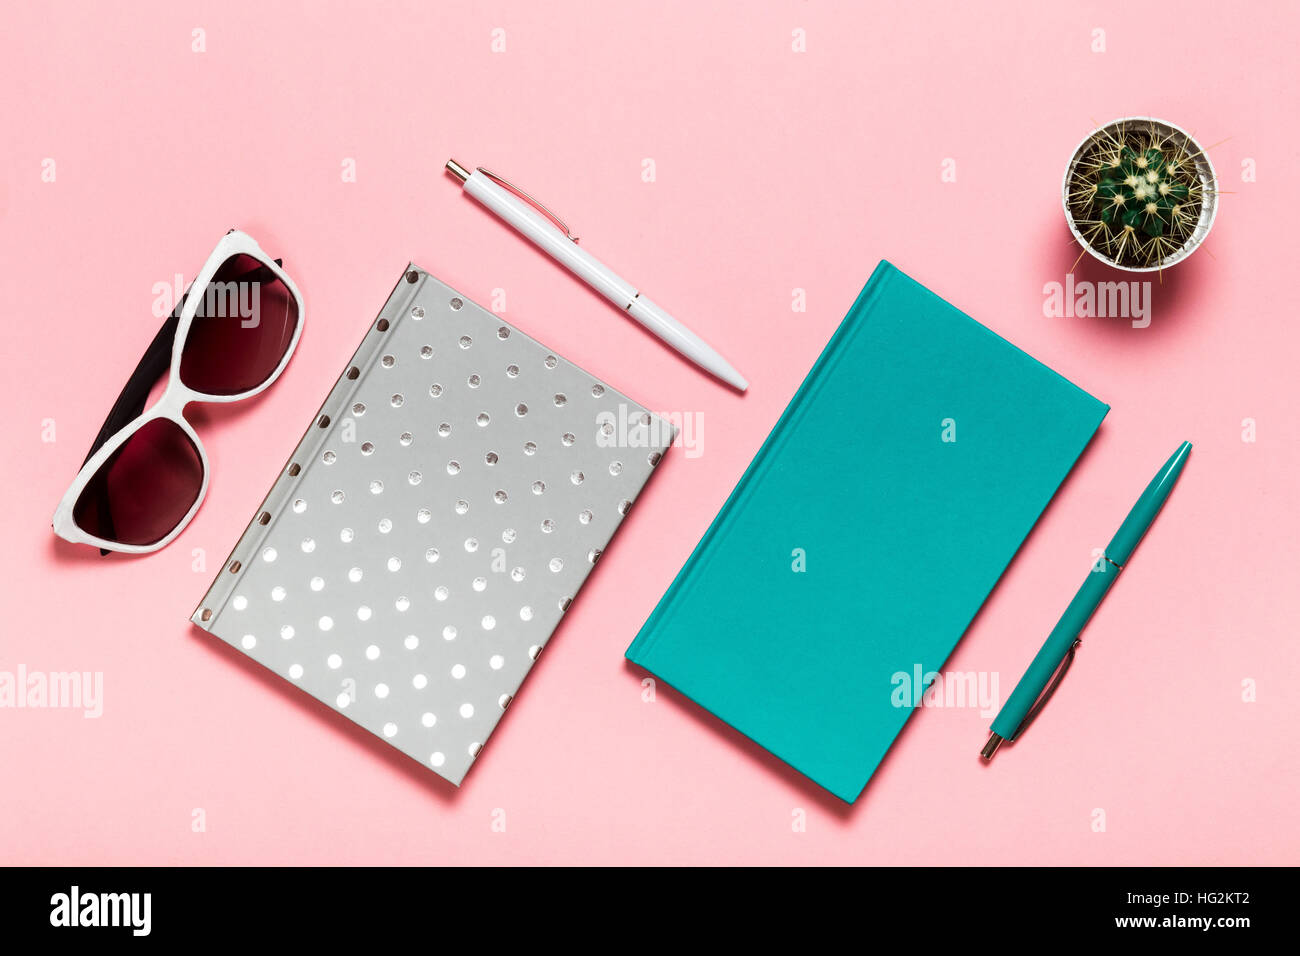 Weiß und grün-blauen Stift, Brille, silbrig Notebook, Aquamarin Tagebuch, Kaktus auf rosa Hintergrund. flach legen, Top Aussicht. Stockfoto